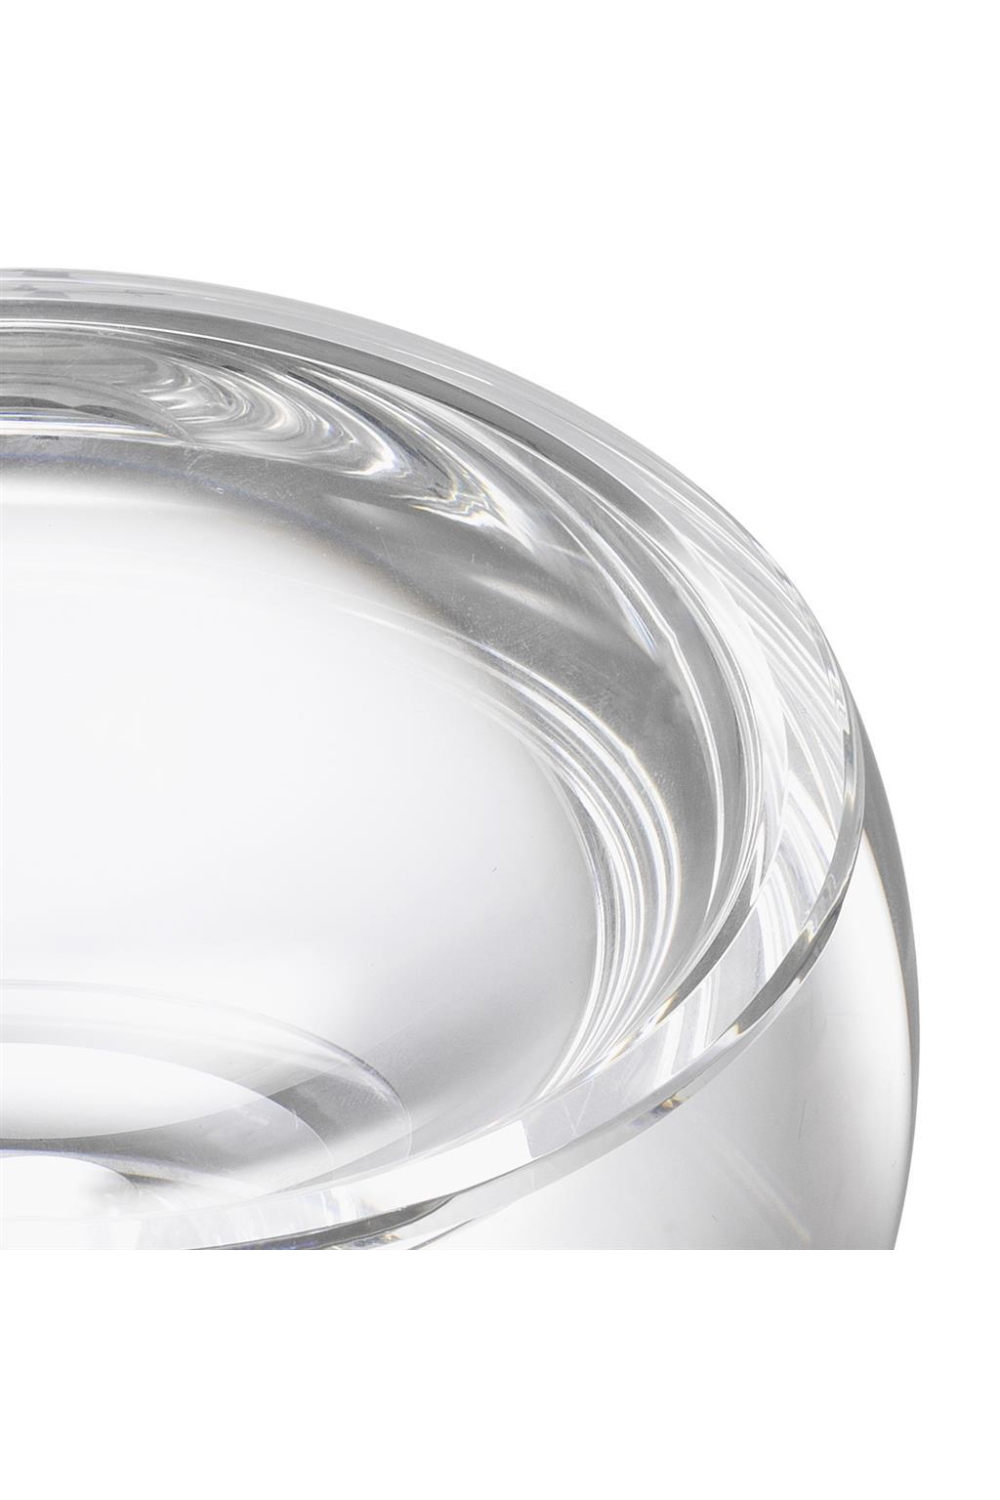 Crystal Glass Bowl | Eichholtz Vista | OROA